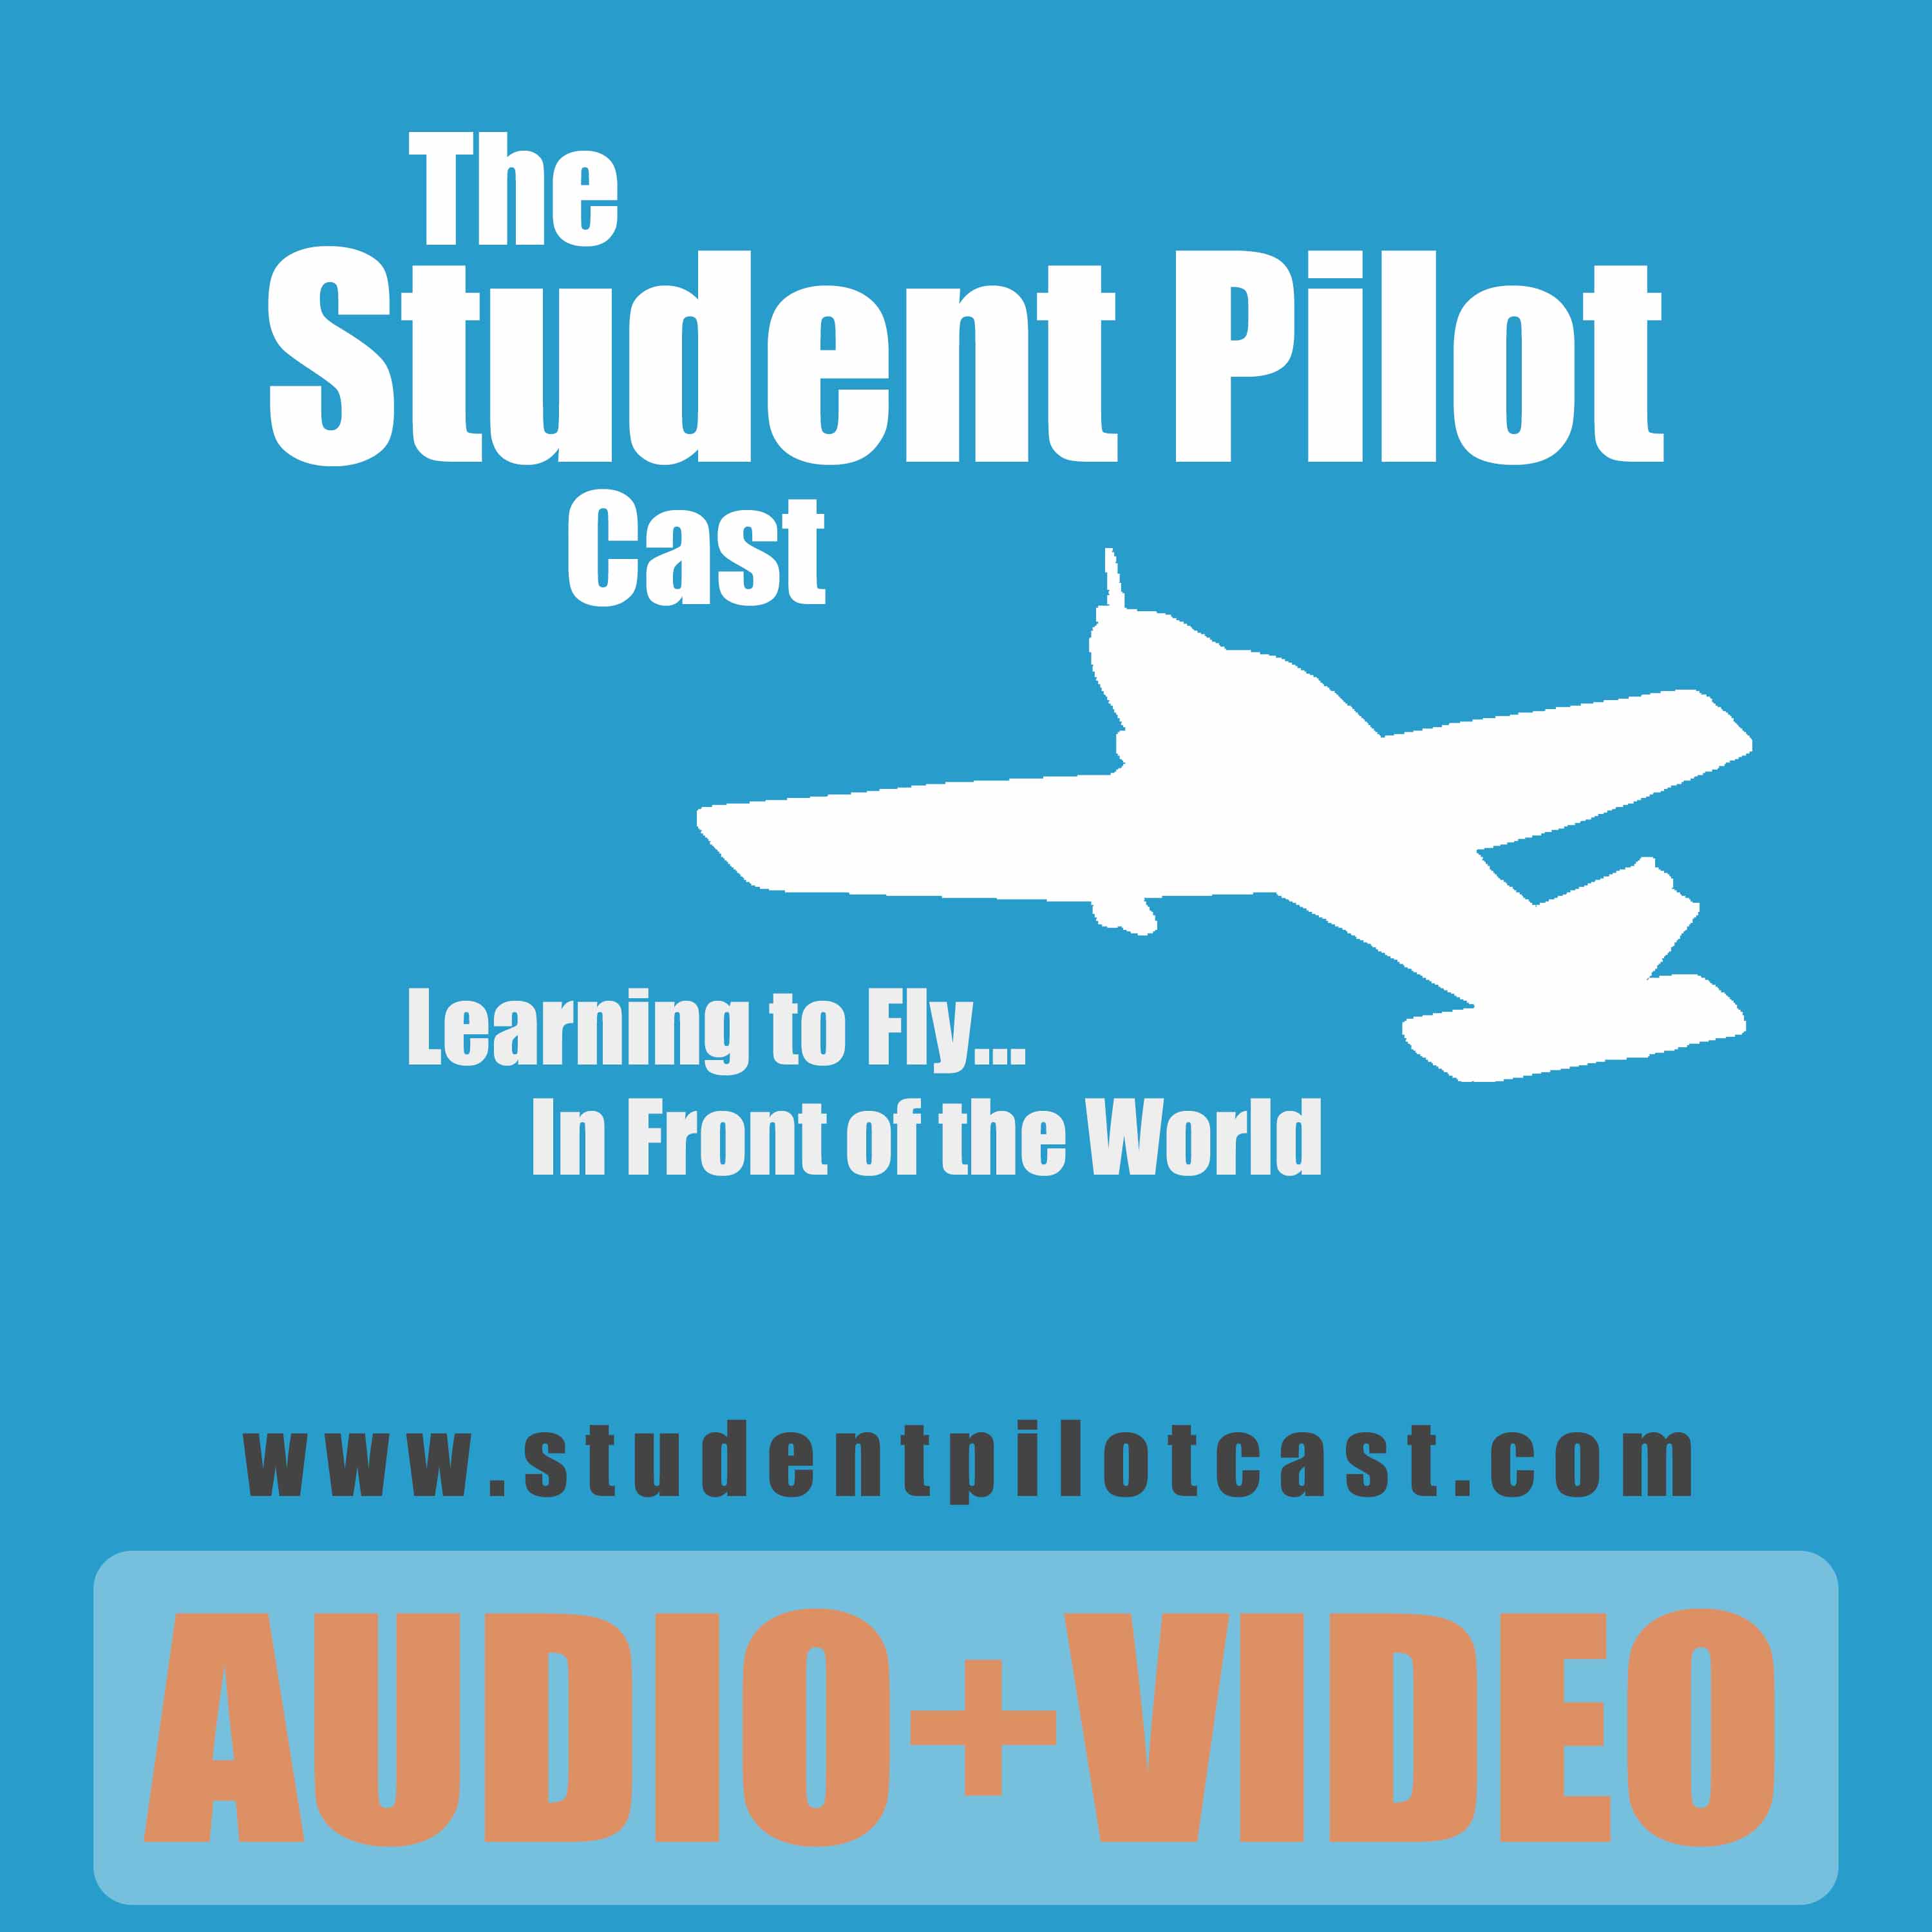 The Student Pilot Cast